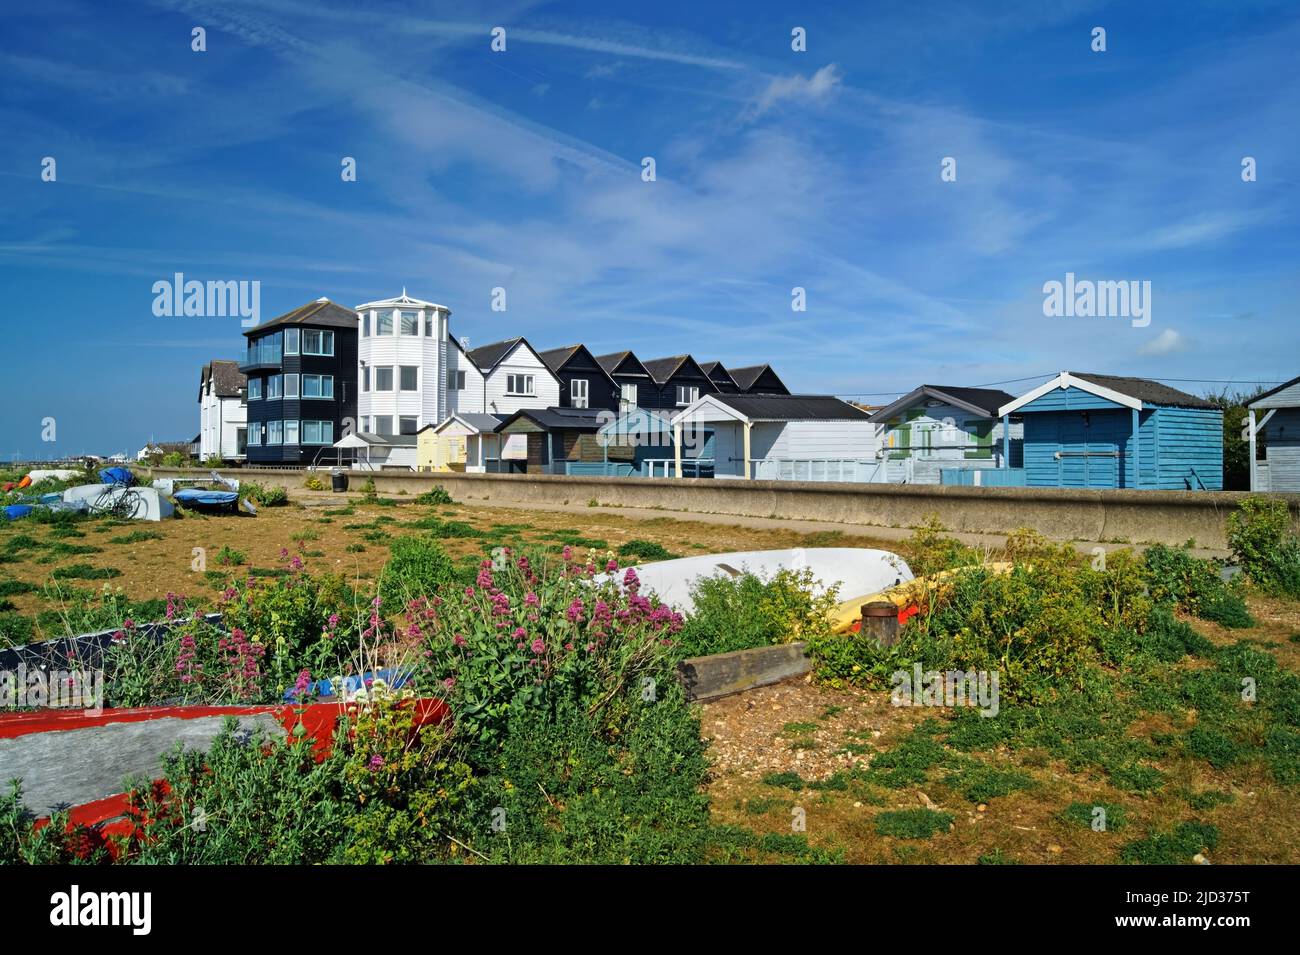 Royaume-Uni, Kent, Whitstable Beach huts, Overretourné bateaux et appartements Banque D'Images